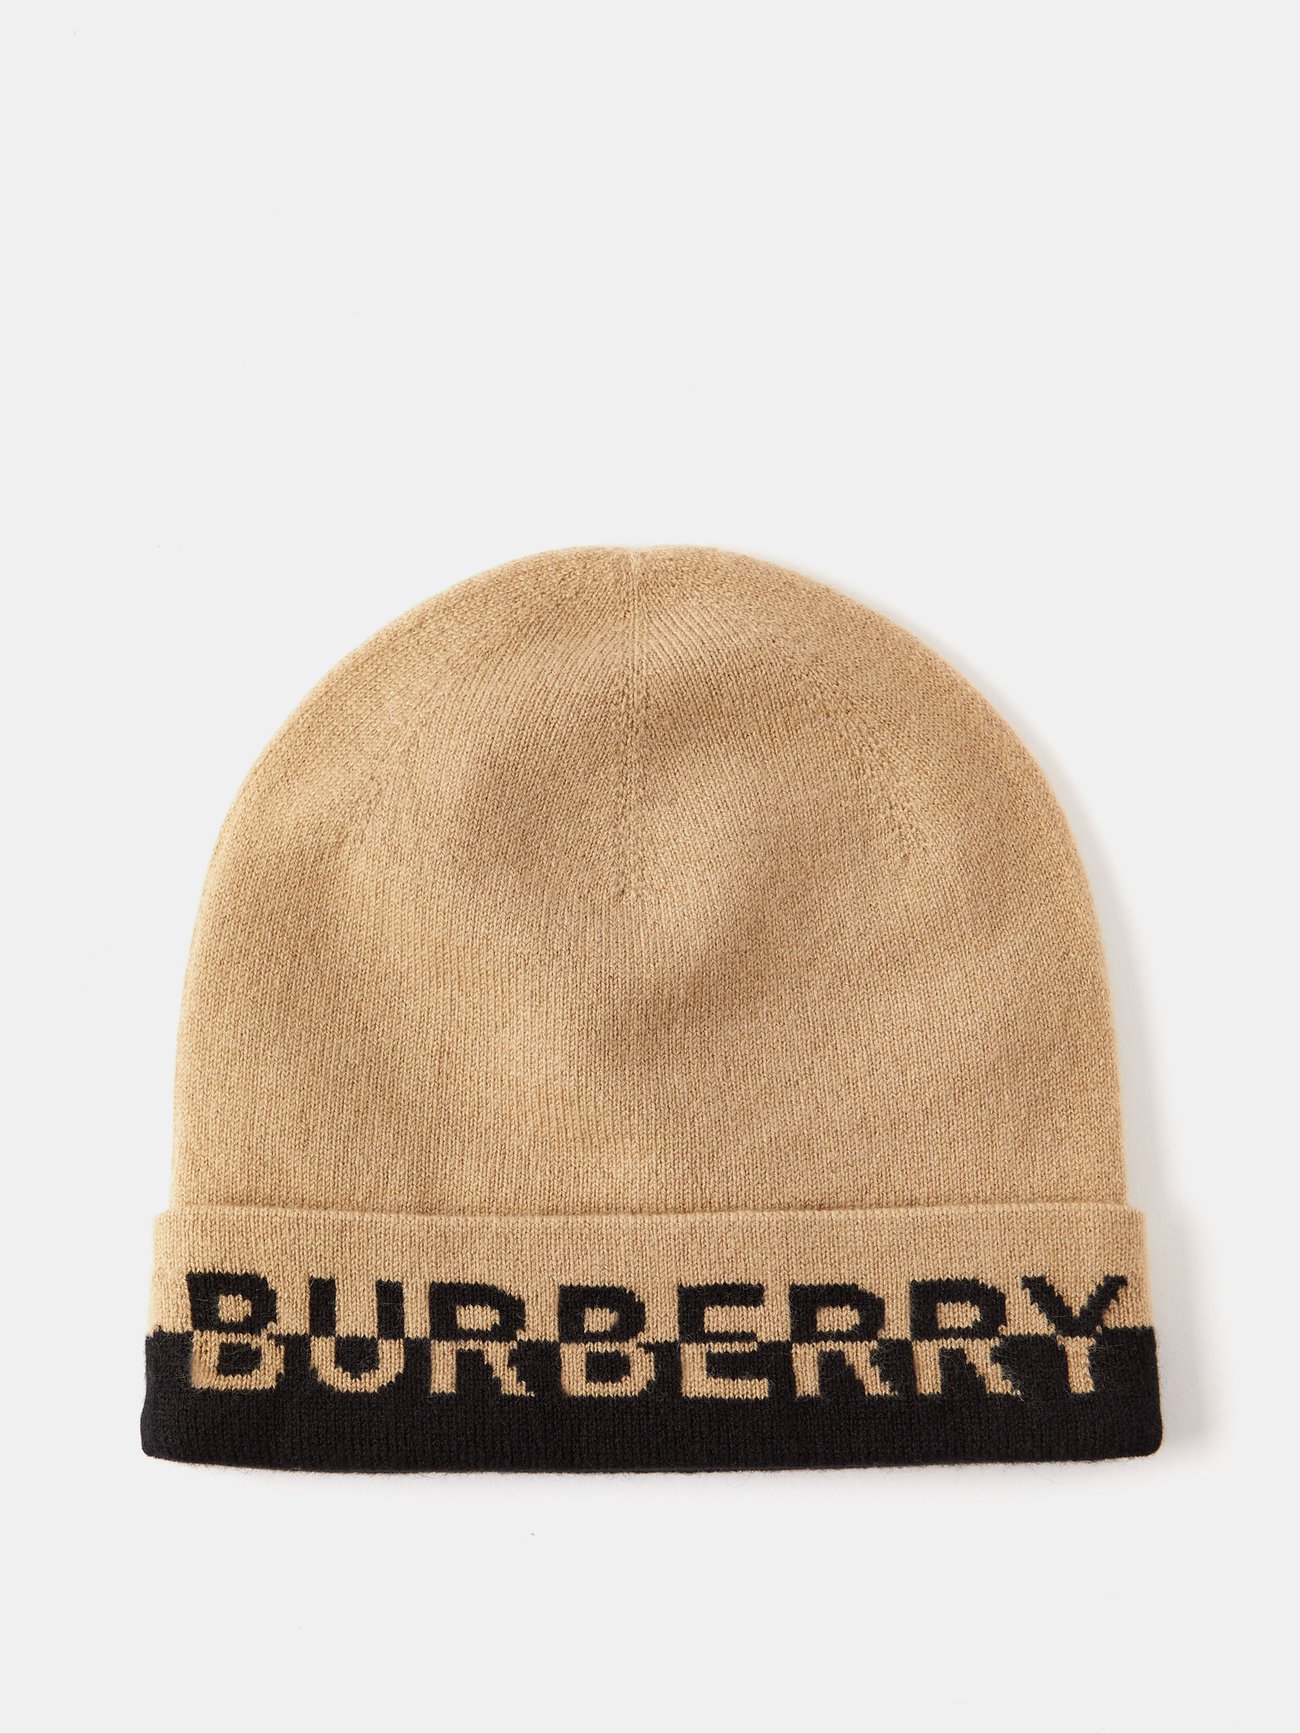 Burberry Logo Graphic Cashmere Blend Beanie toque winter hat beige